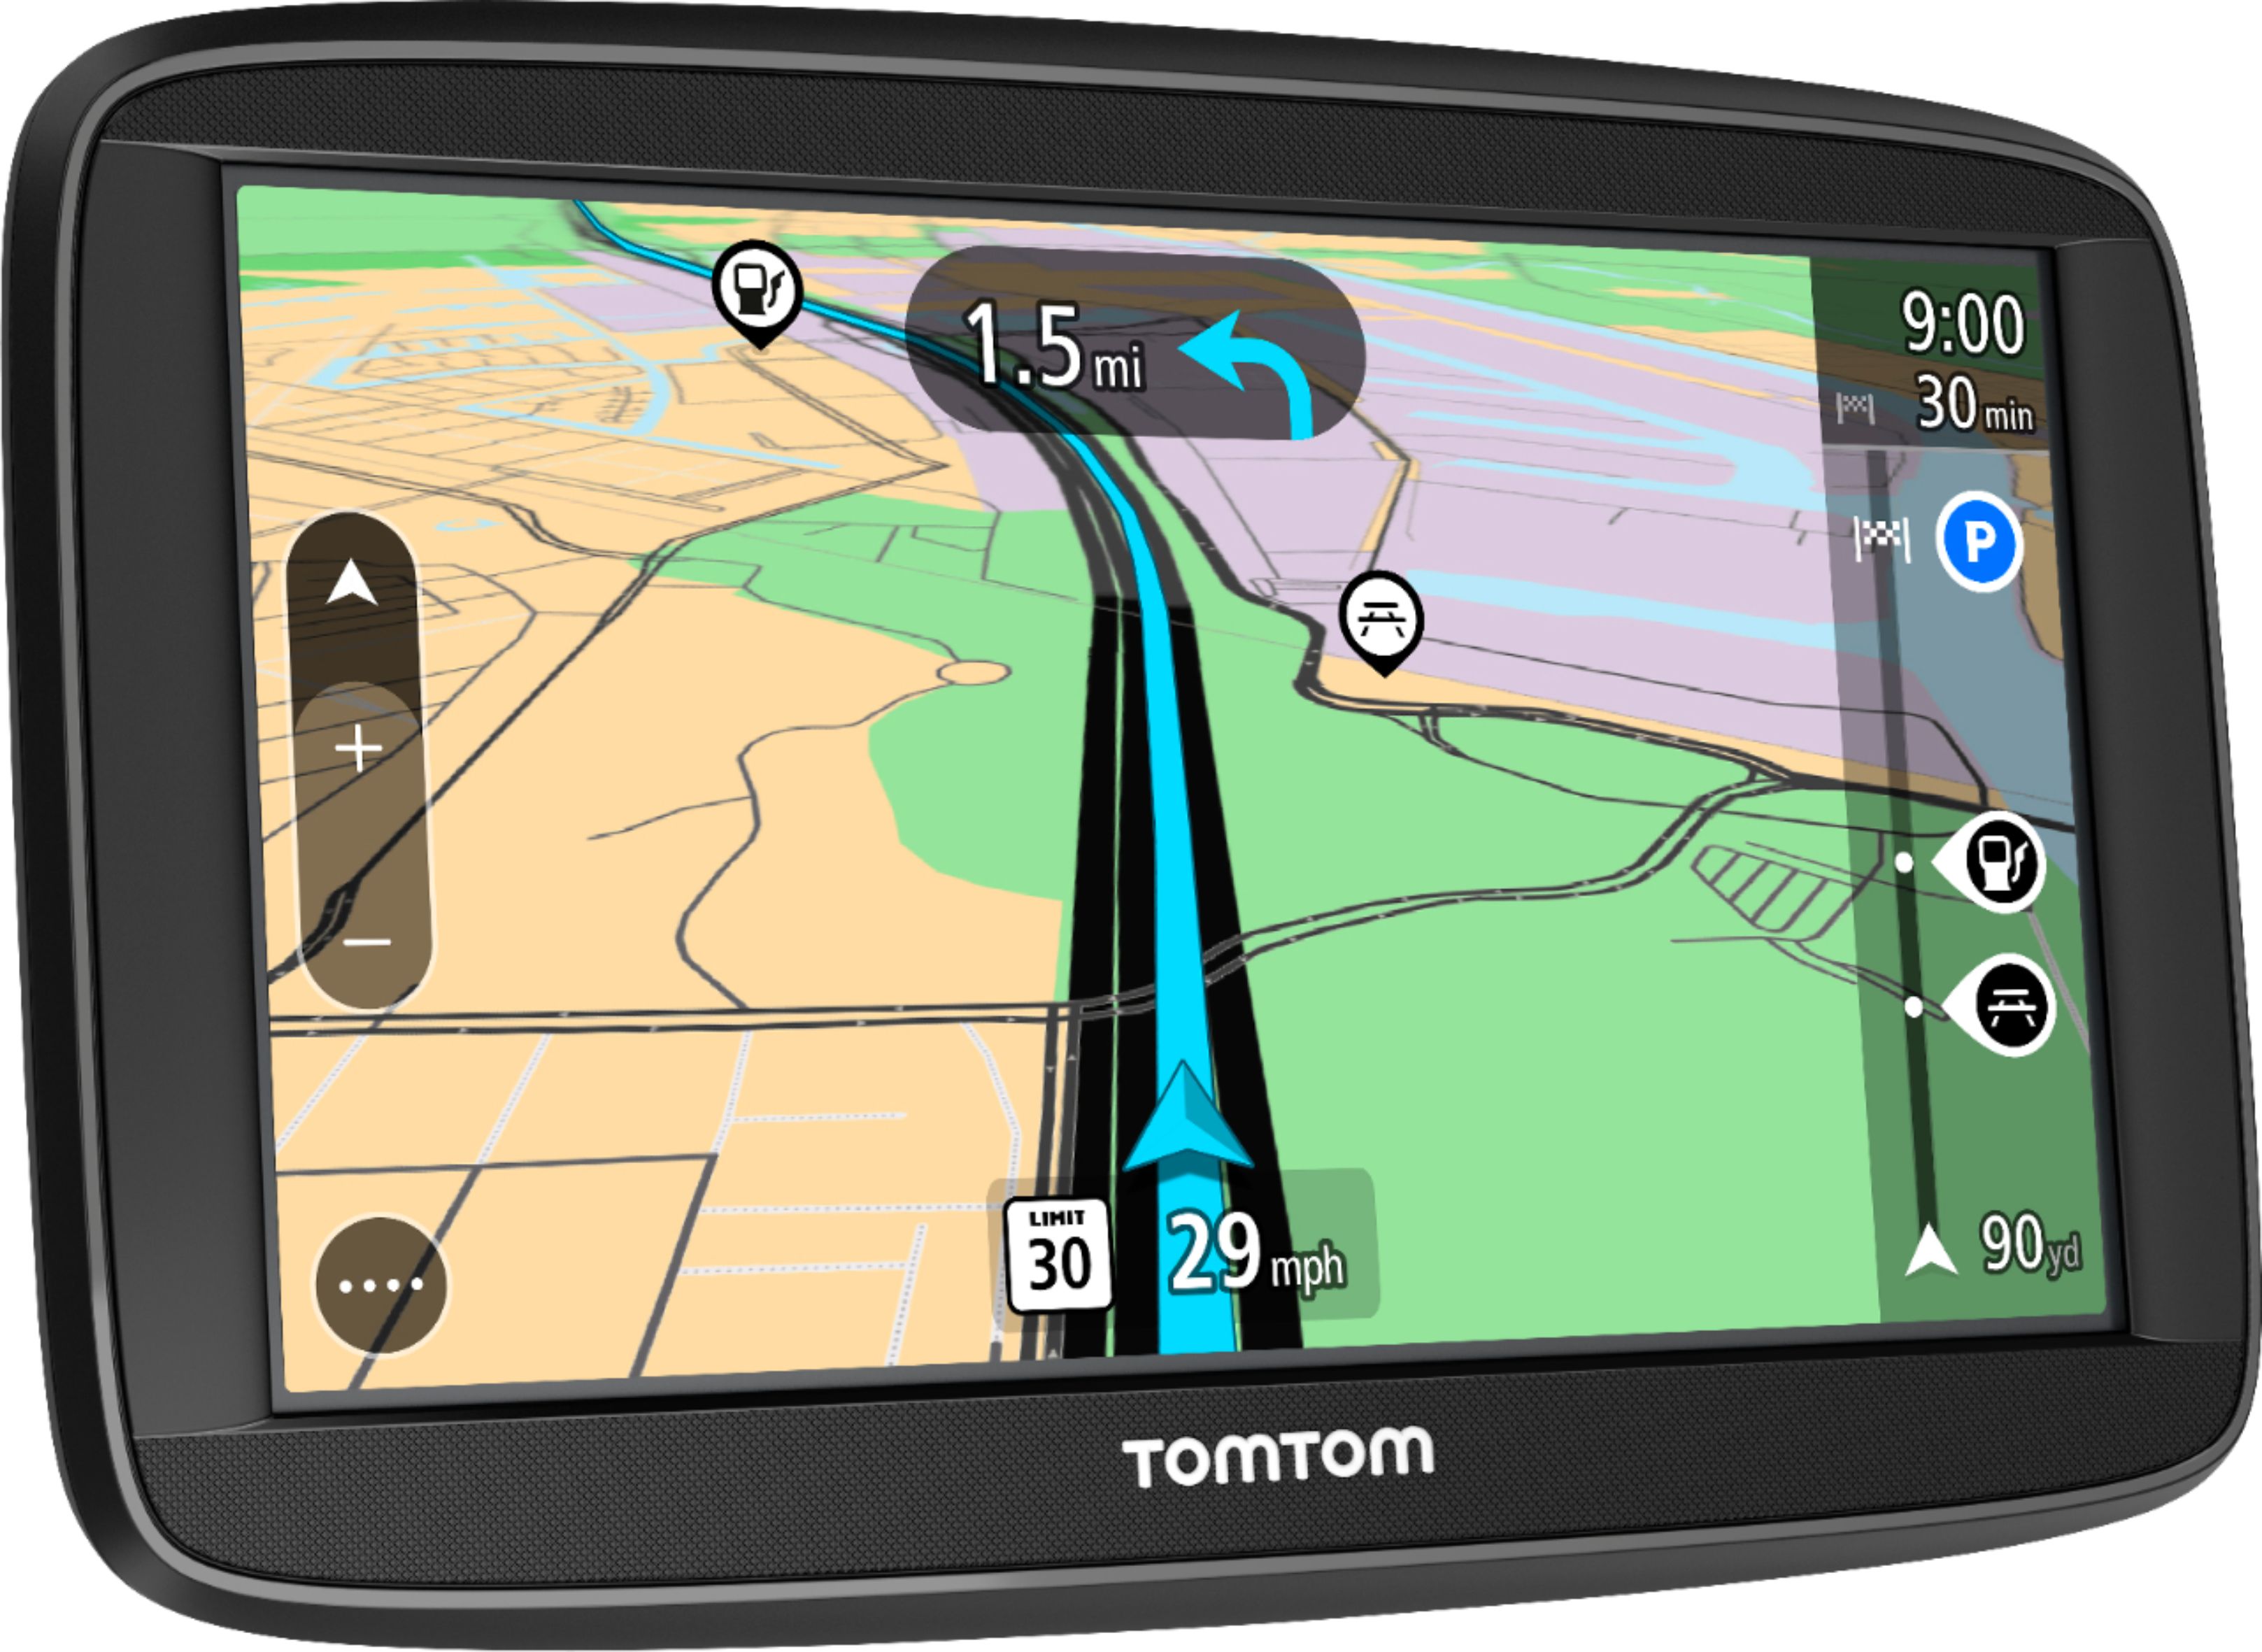 Angle View: TomTom Via 1525M GPS Navigator